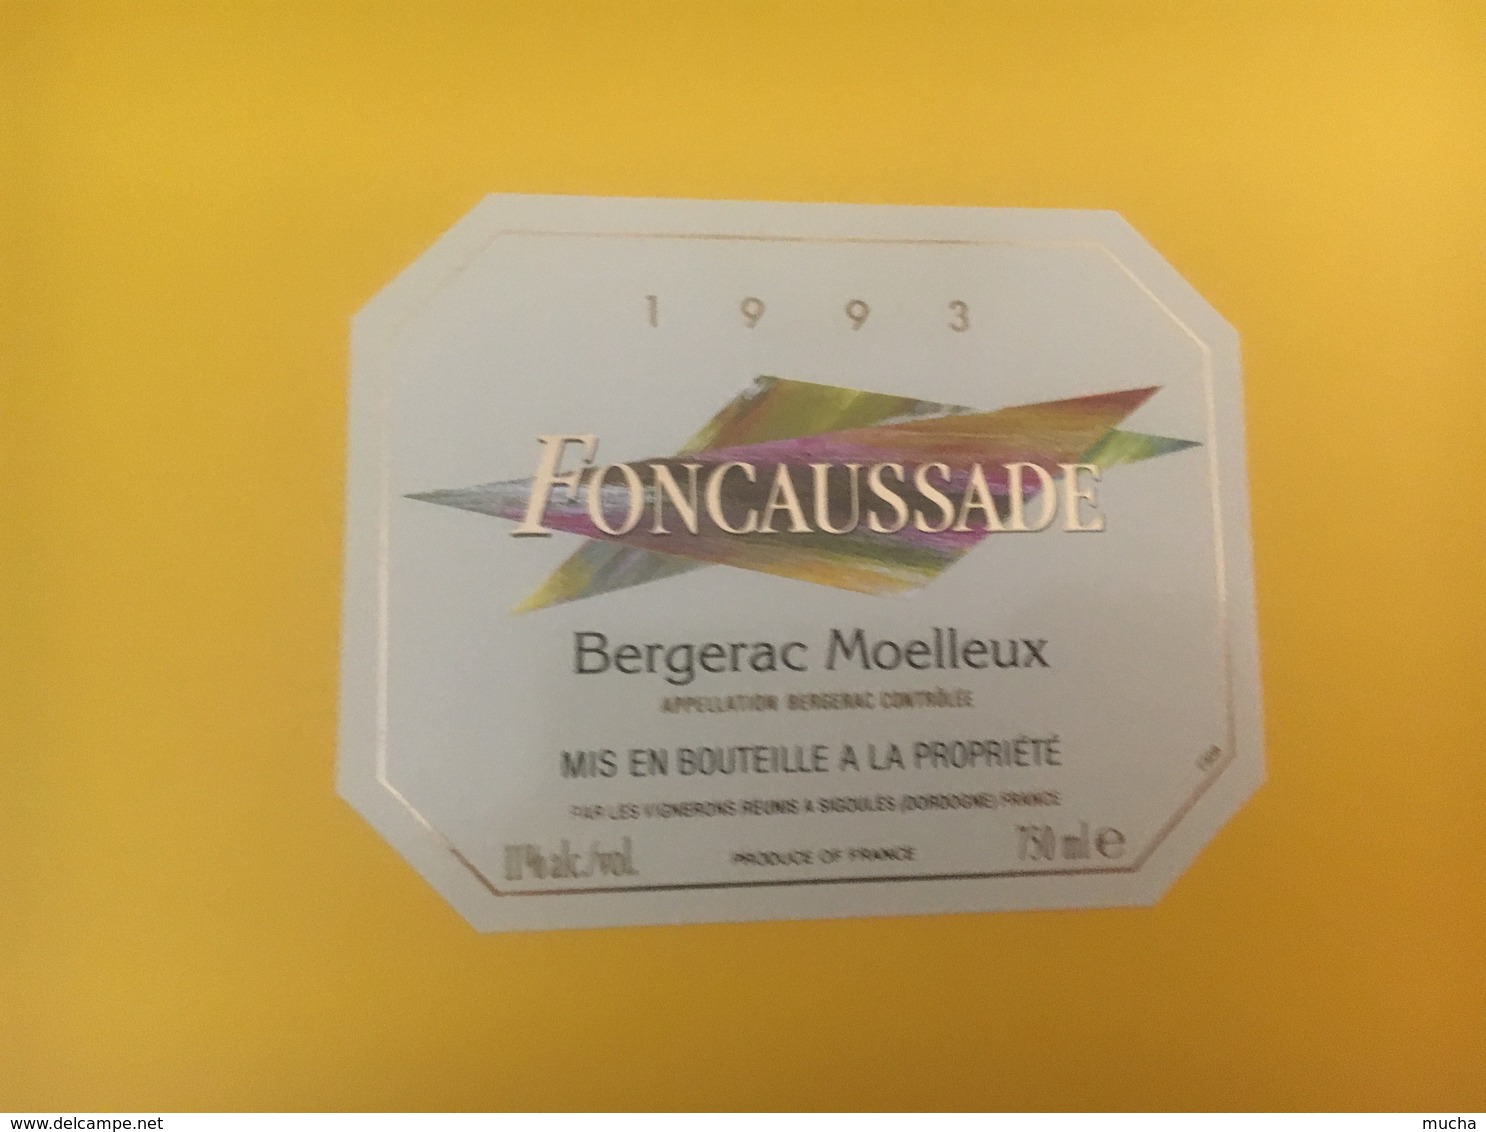 8325 - Foncaussade  1993 Bergerac Moelleux - Bergerac